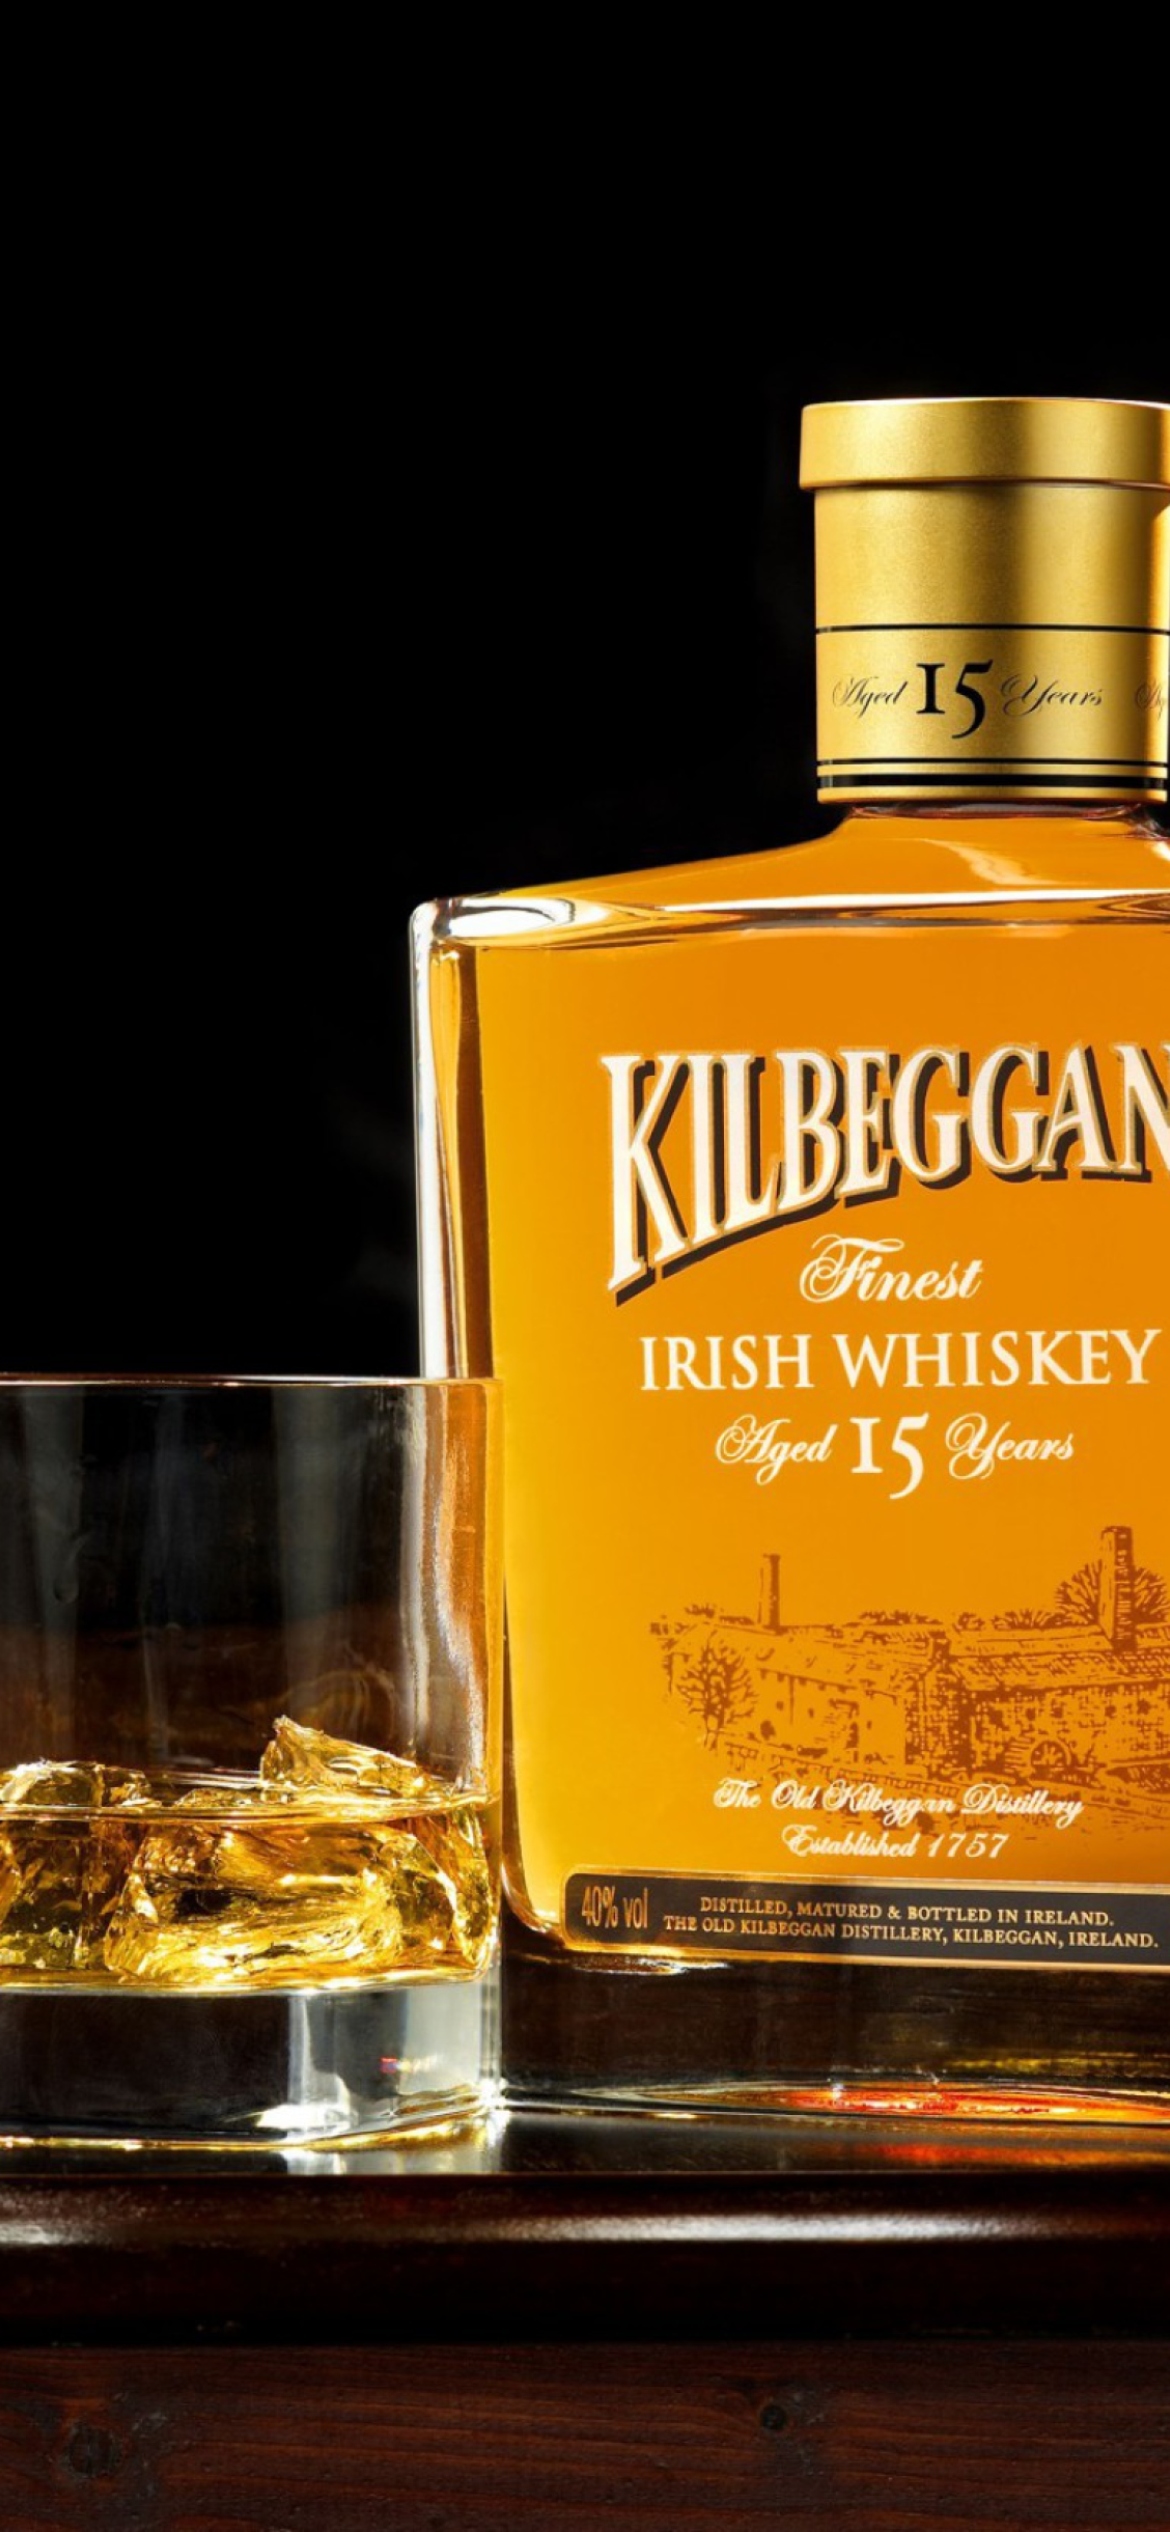 Fondo de pantalla Kilbeggan - Irish Whiskey 1170x2532